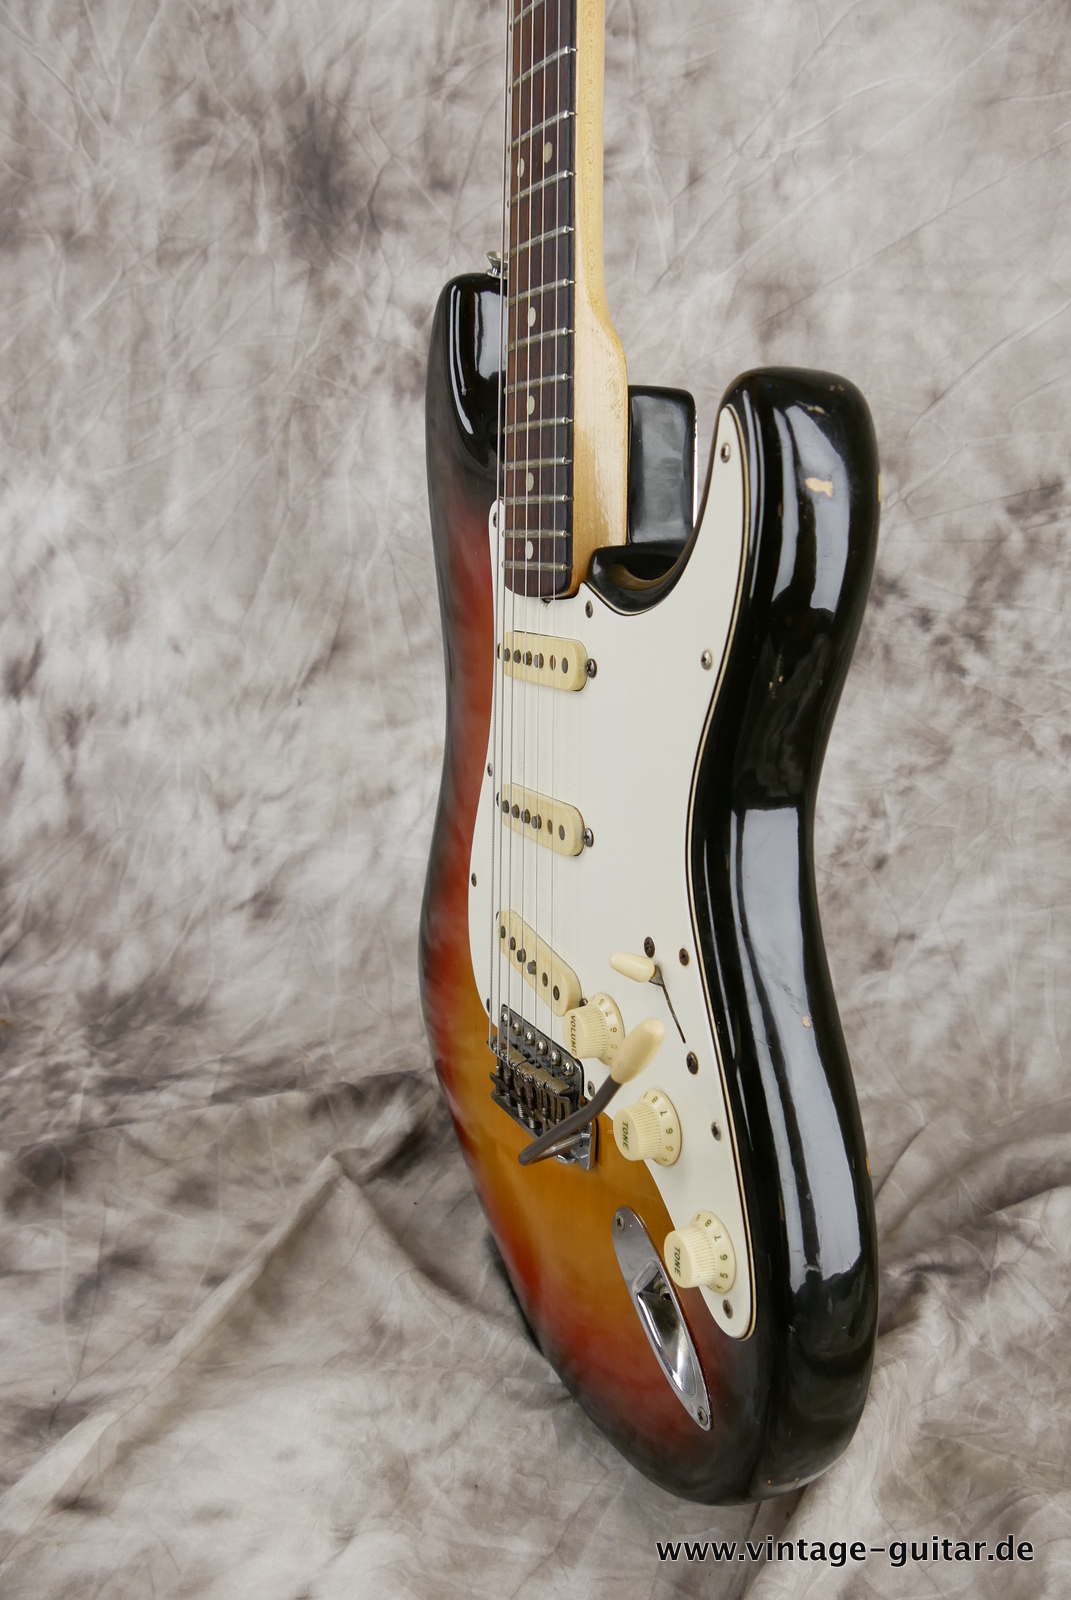 Fender-Stratocaster-1971-sunburst-4-hole-006.JPG